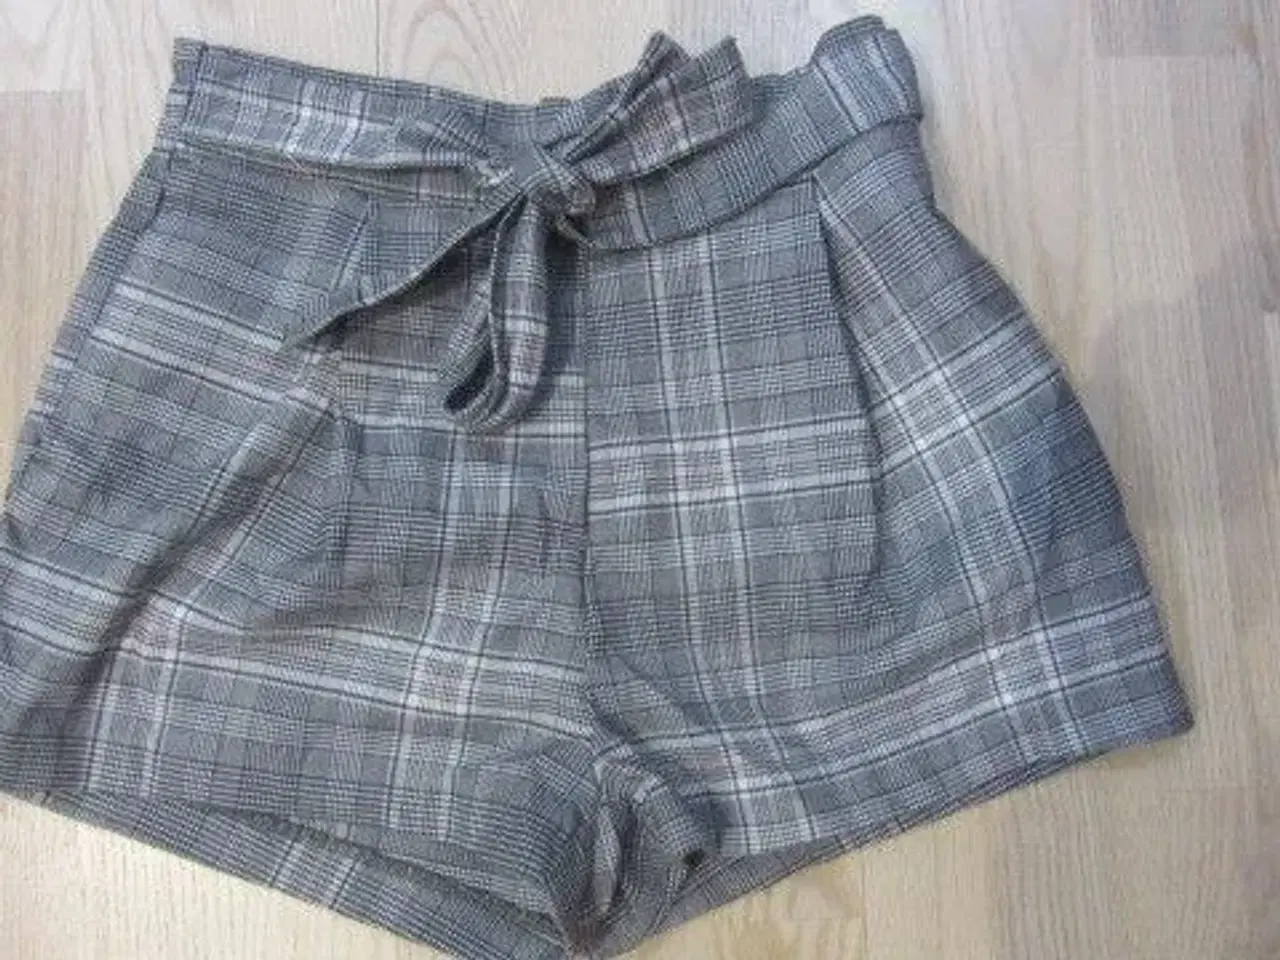 Billede 1 - Str. 36, flotte shorts